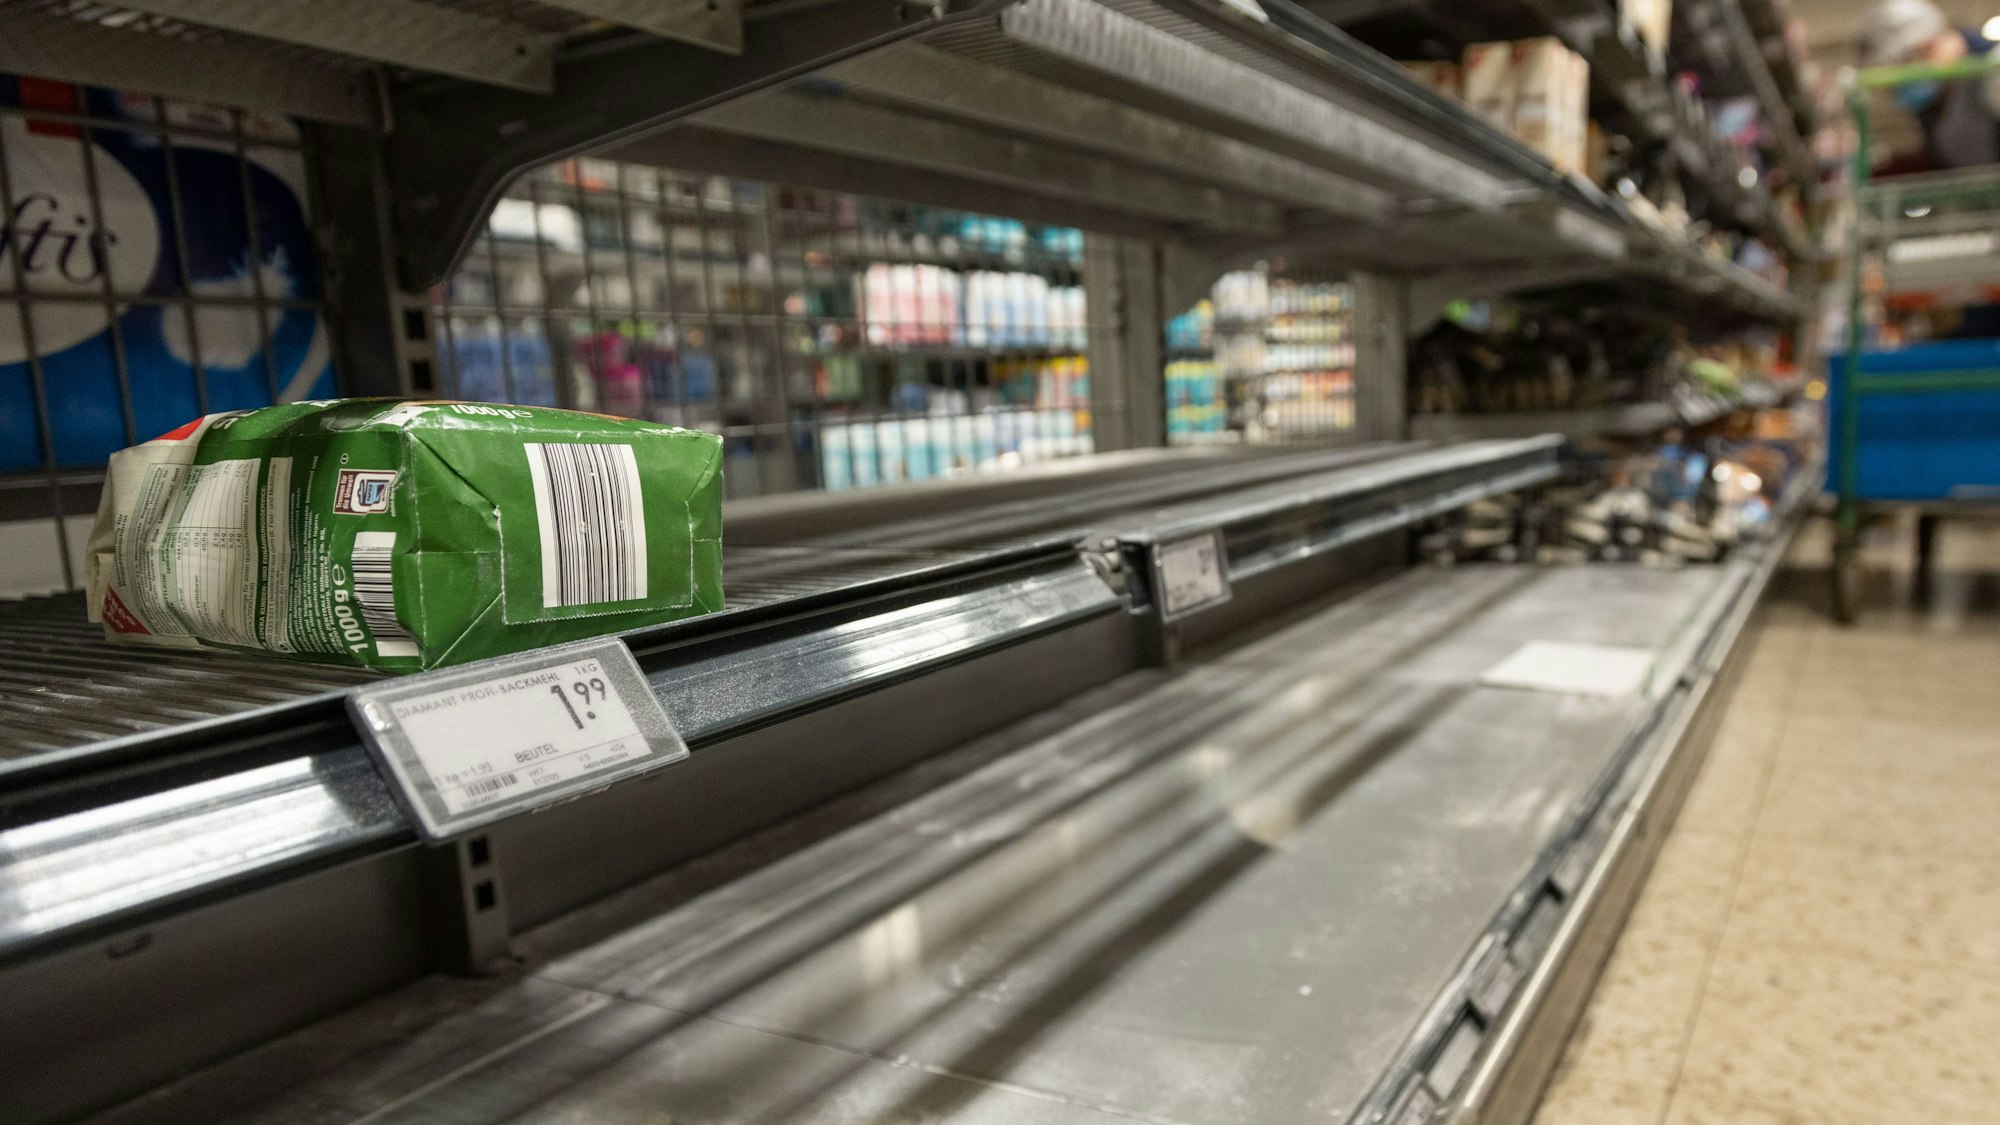 Die Regale für manche Produkte sind weitestgehend leer gekauft infolge des Ukraine-Konfliktes. Das Symbolbild zeigt ein leeres Regal im Supermarkt vom16. März 2022.